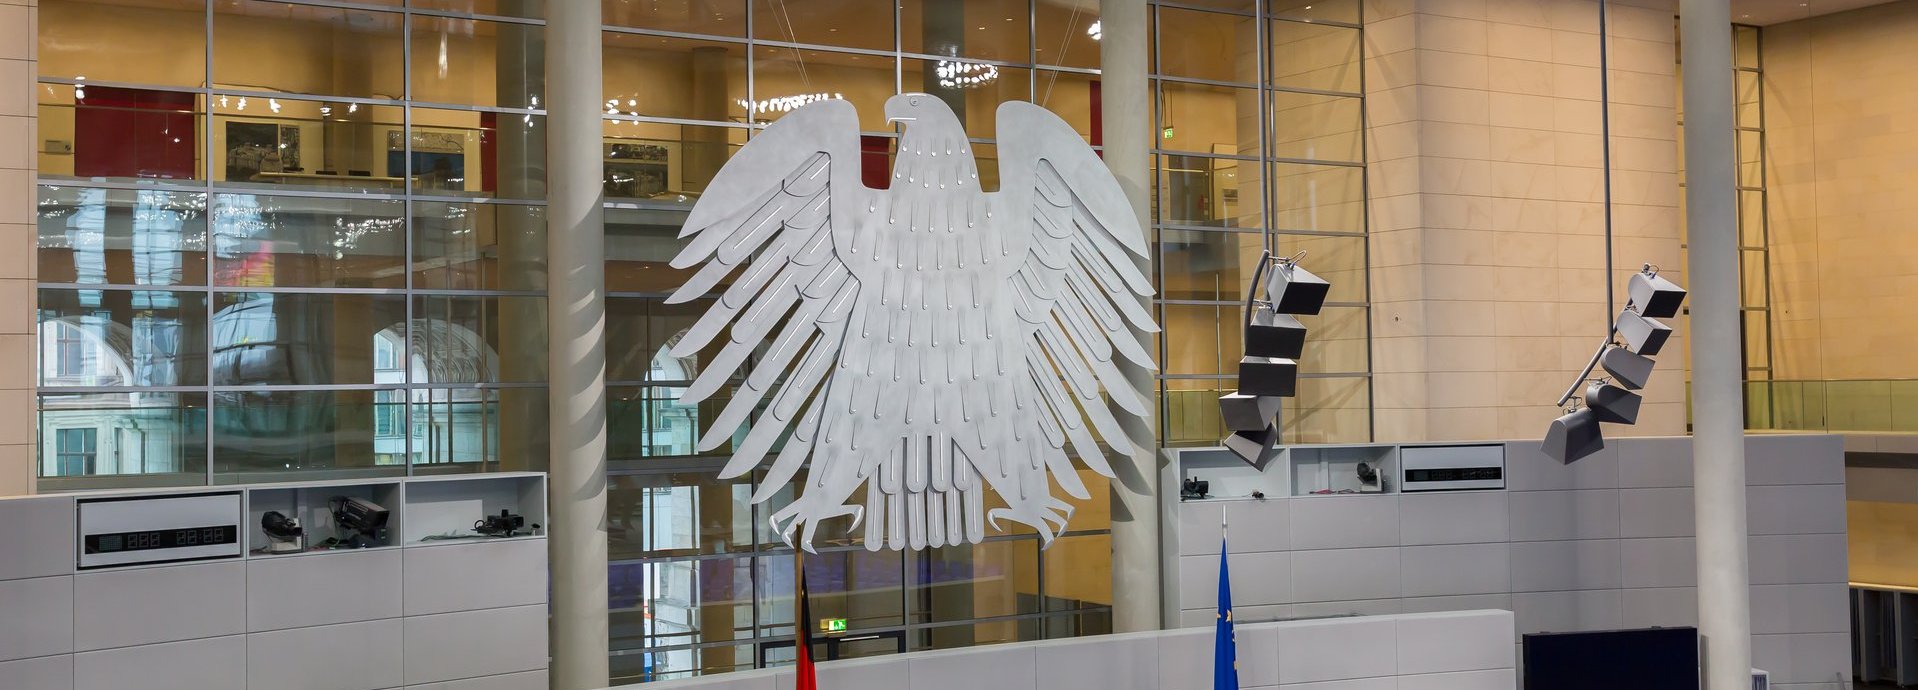 Adler im Plenarsaal des Bundestags mit leeren Sitzen